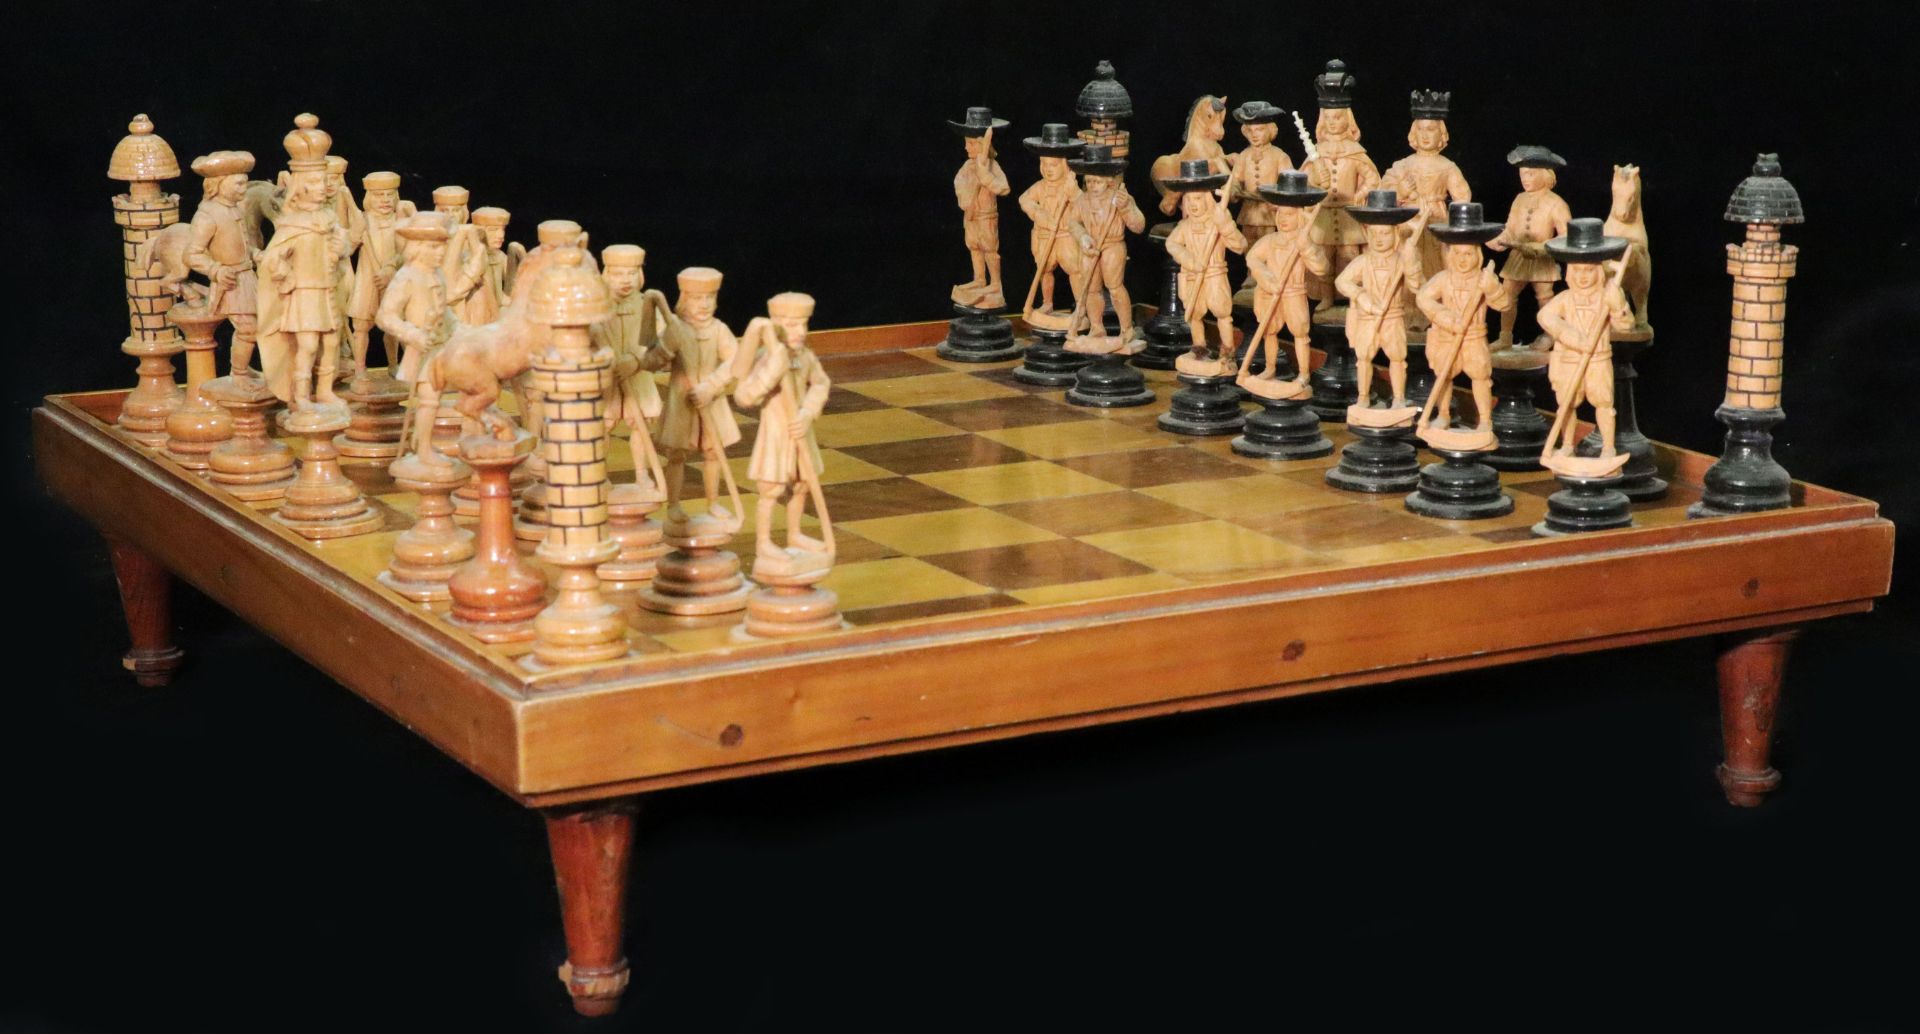 Wohl Frankreich 18./19. Jh., Schachspiel, Holz, geschnitzt, in Kasten mit Schachbrett, eine Figur